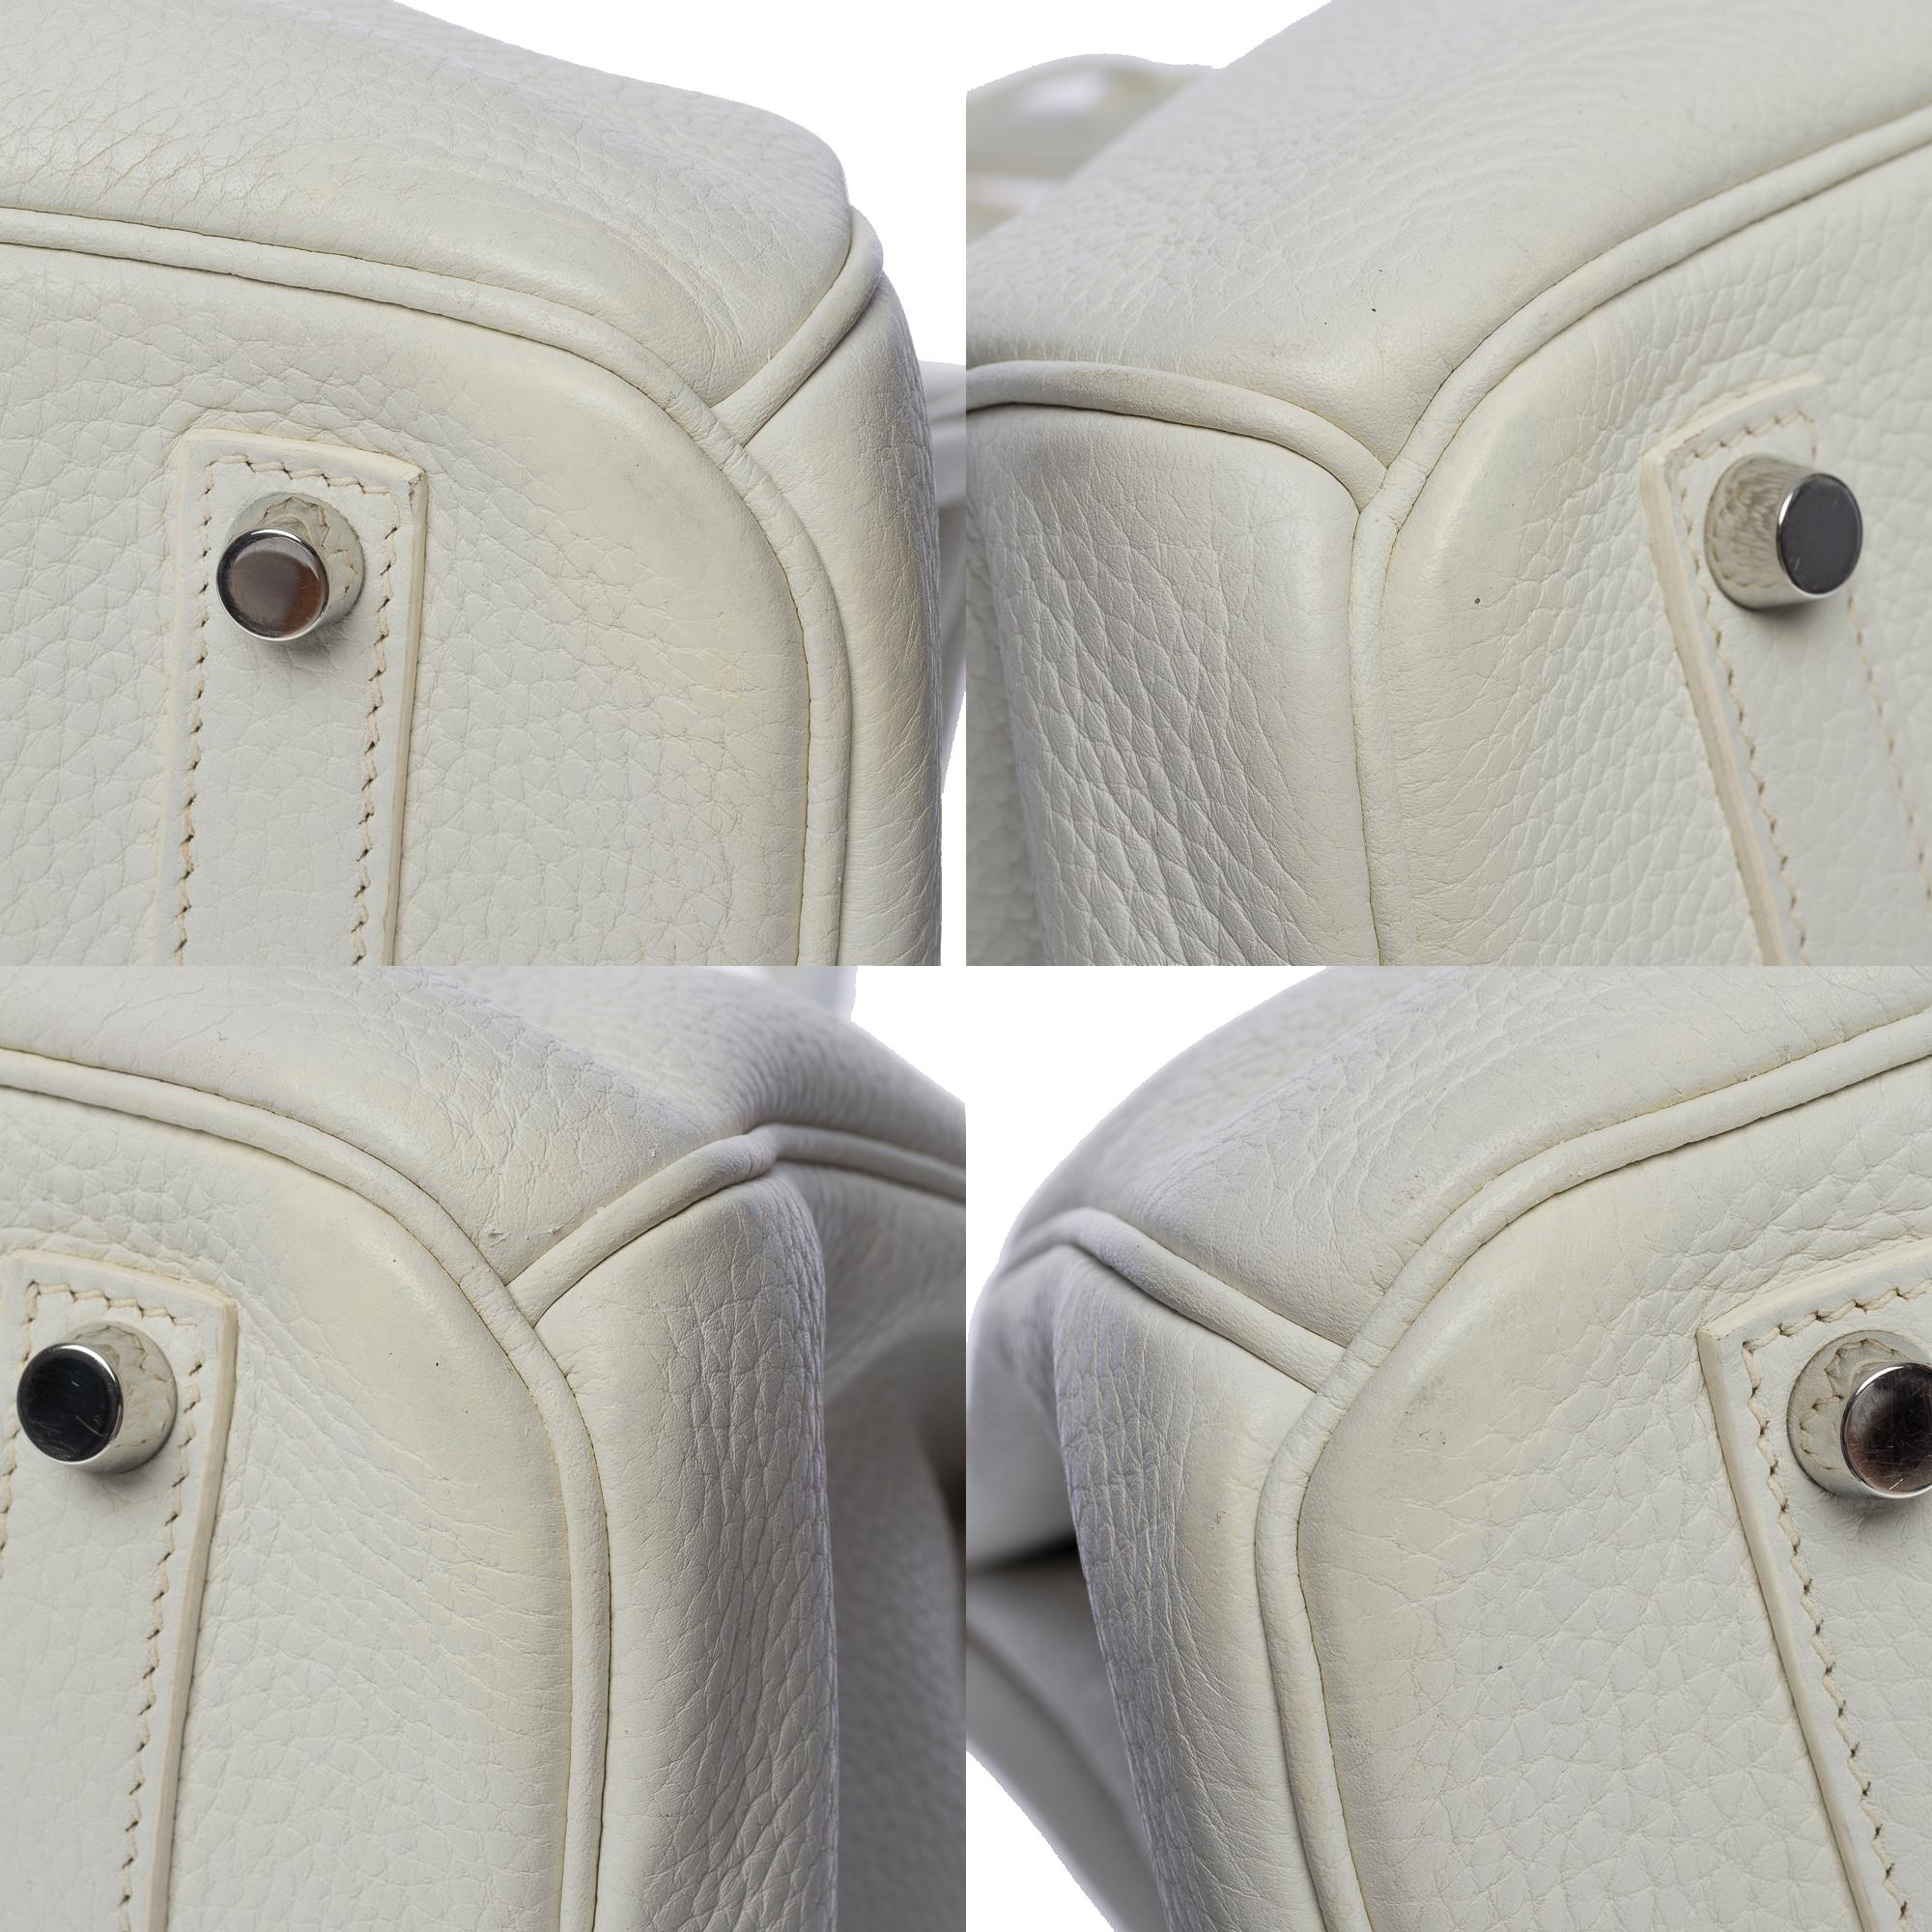 Stunning Hermès Birkin 35 handbag in white Togo leather, SHW 5